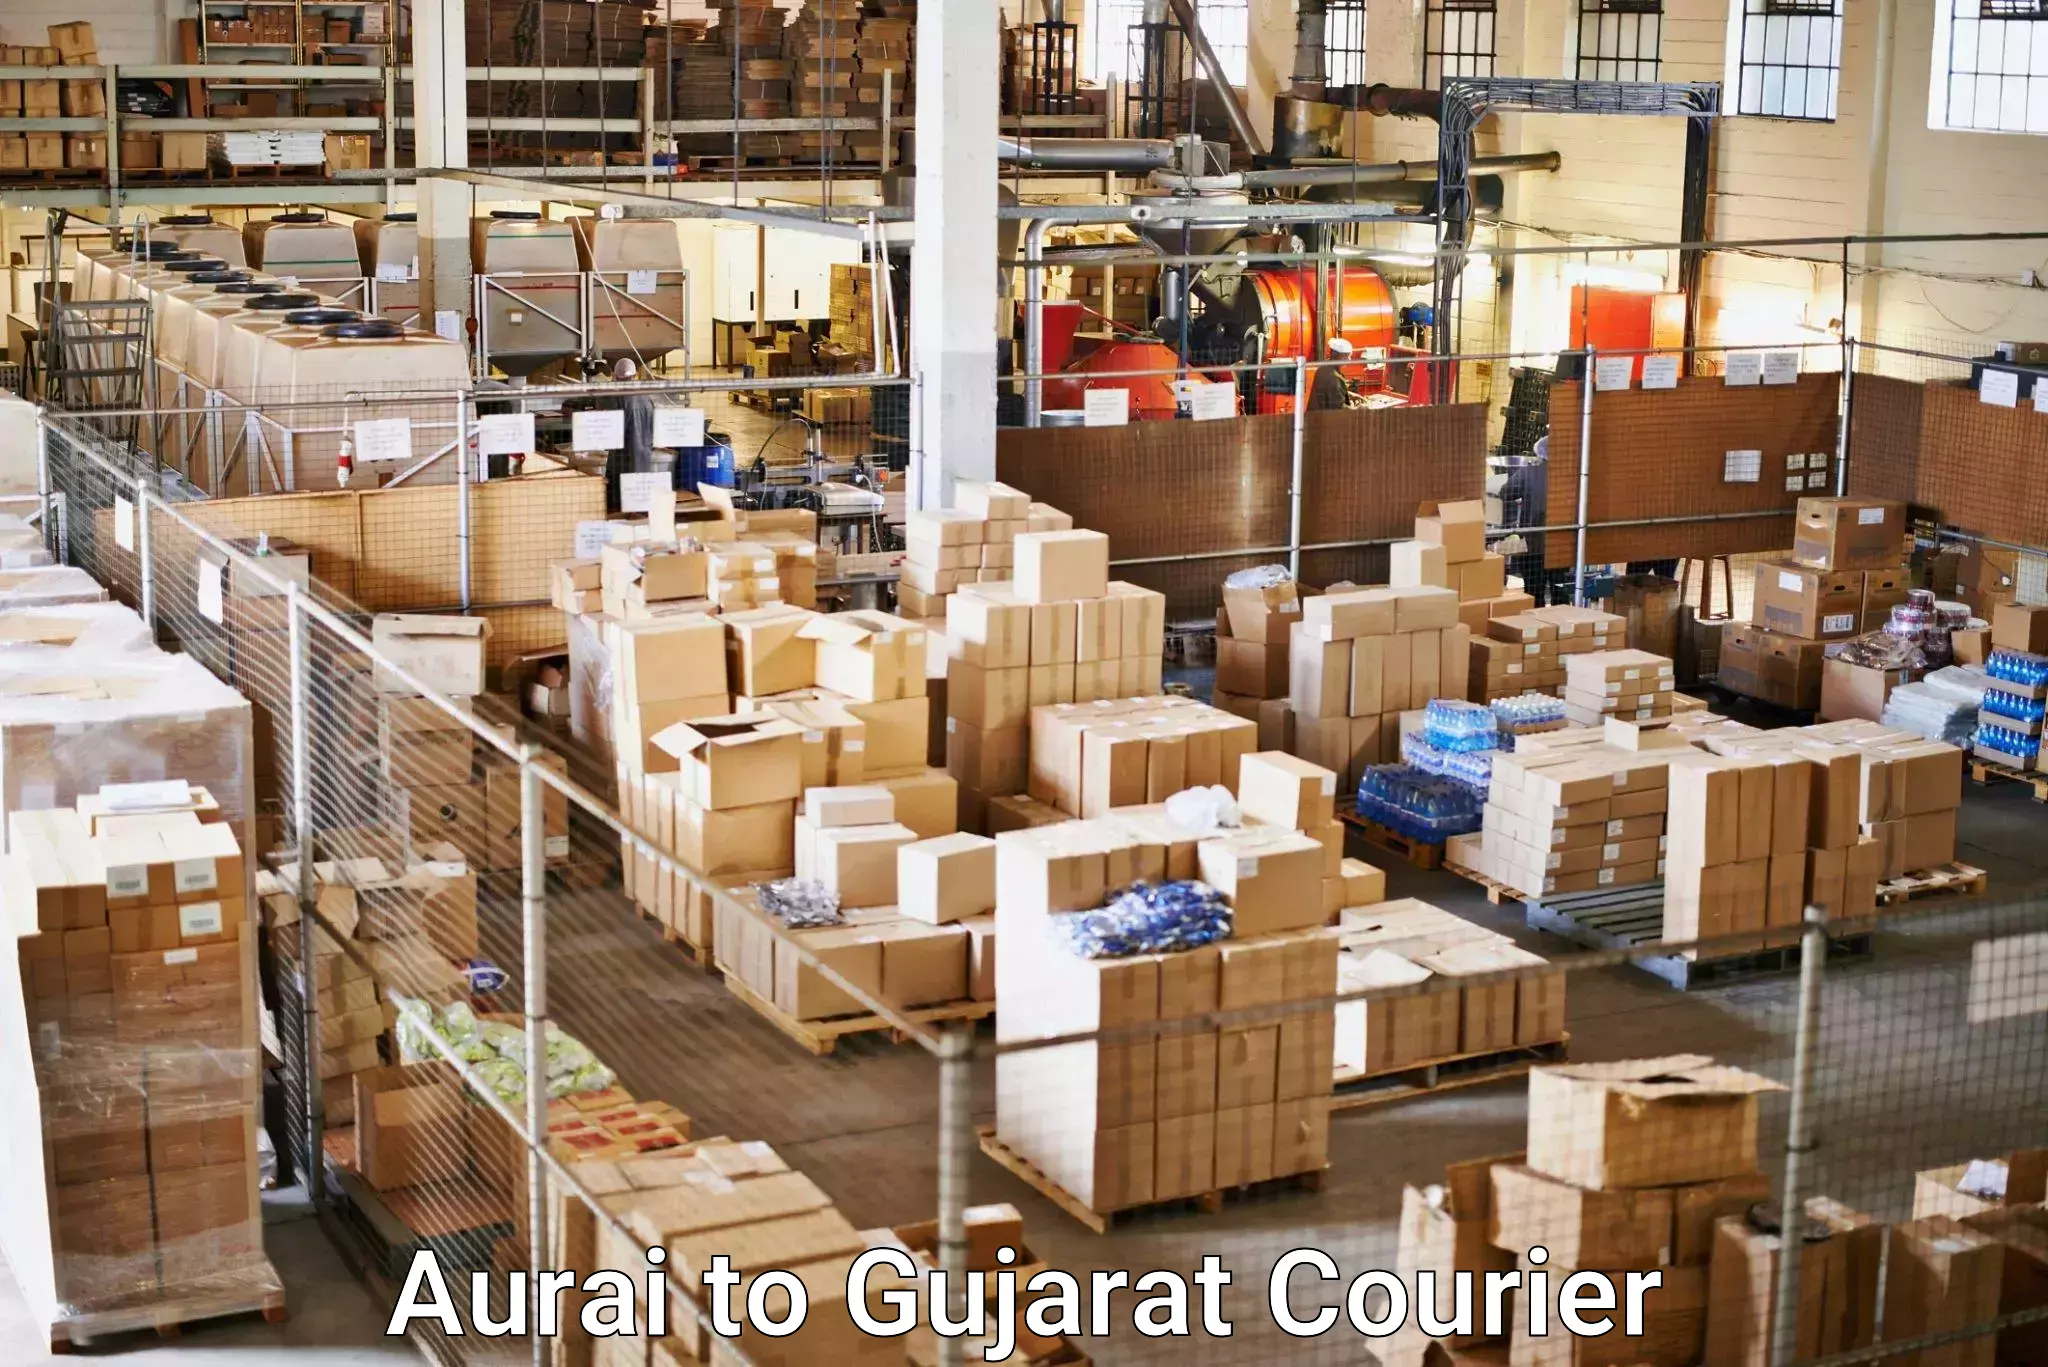 Online shipping calculator Aurai to Dang